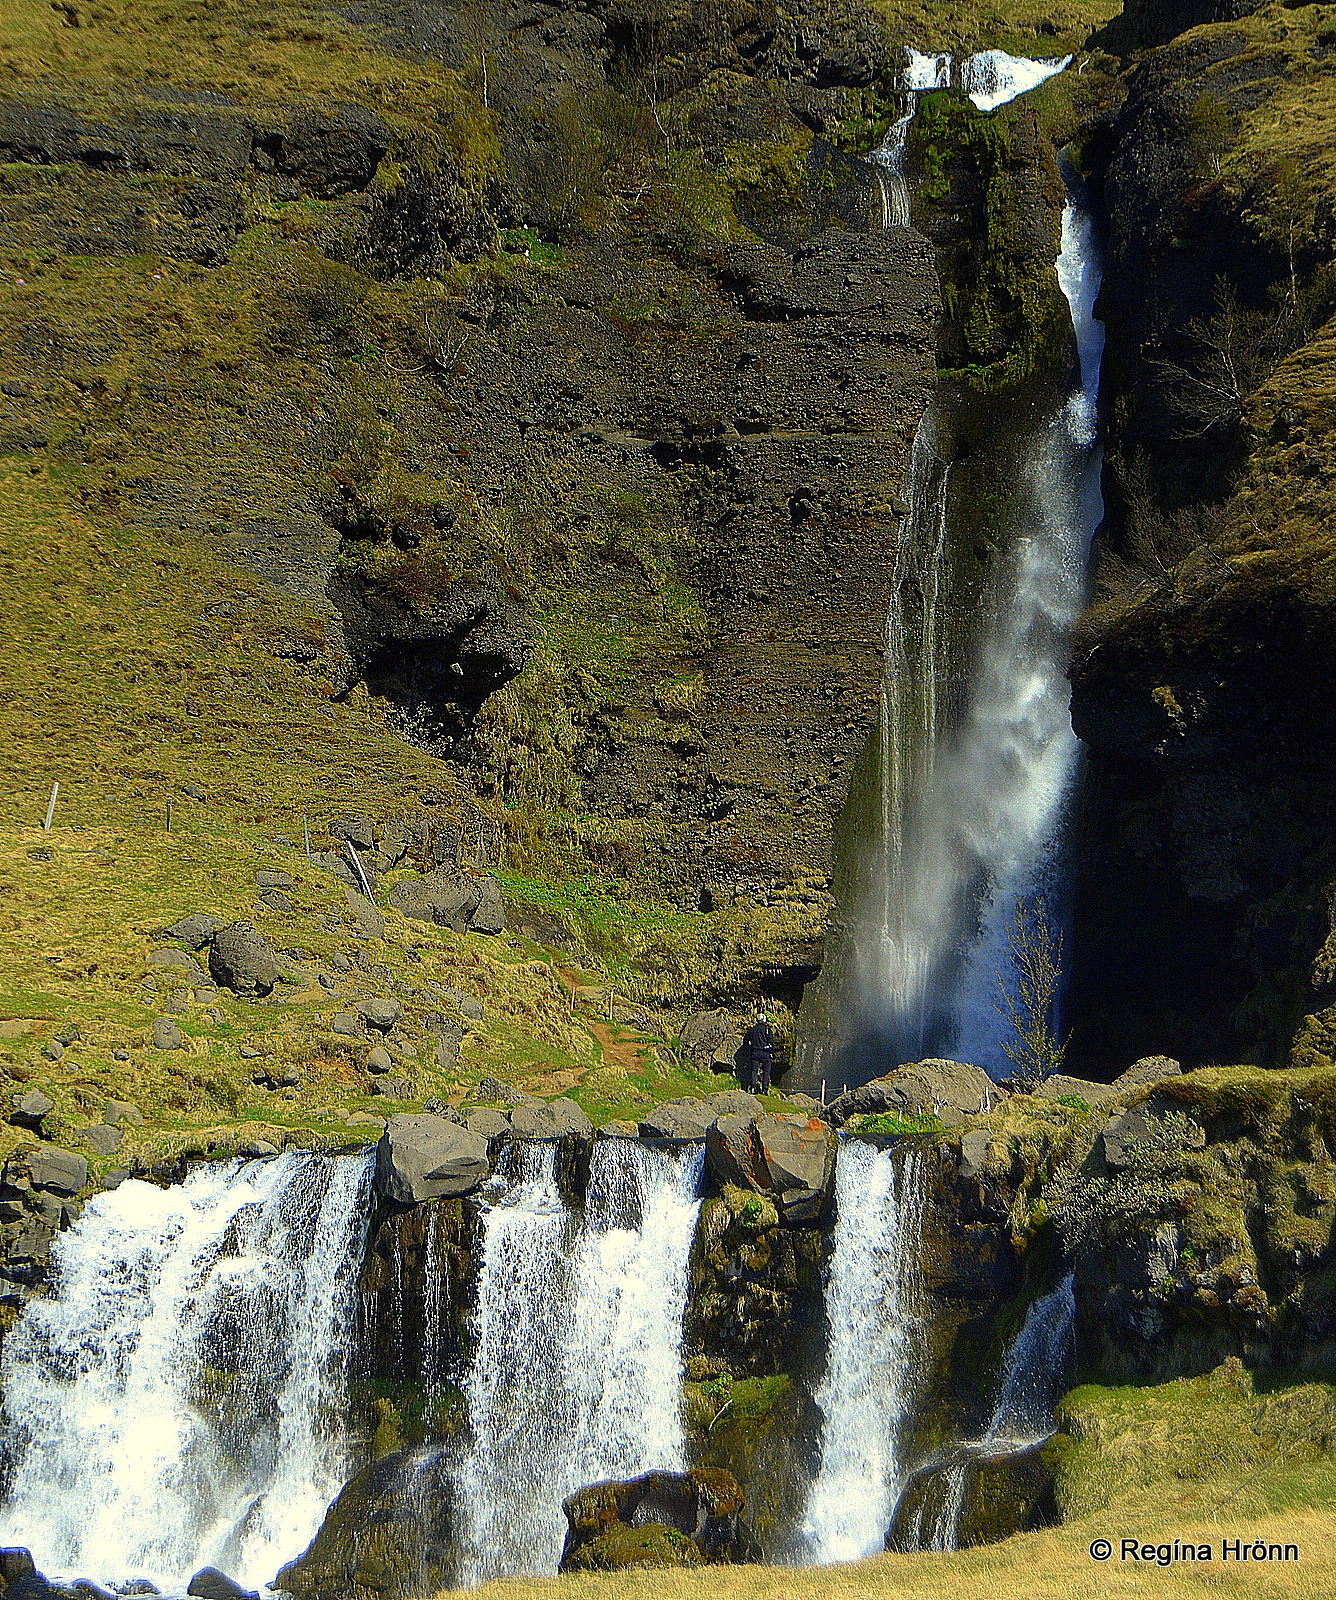 セリャランズフォスの滝 Guide To Iceland